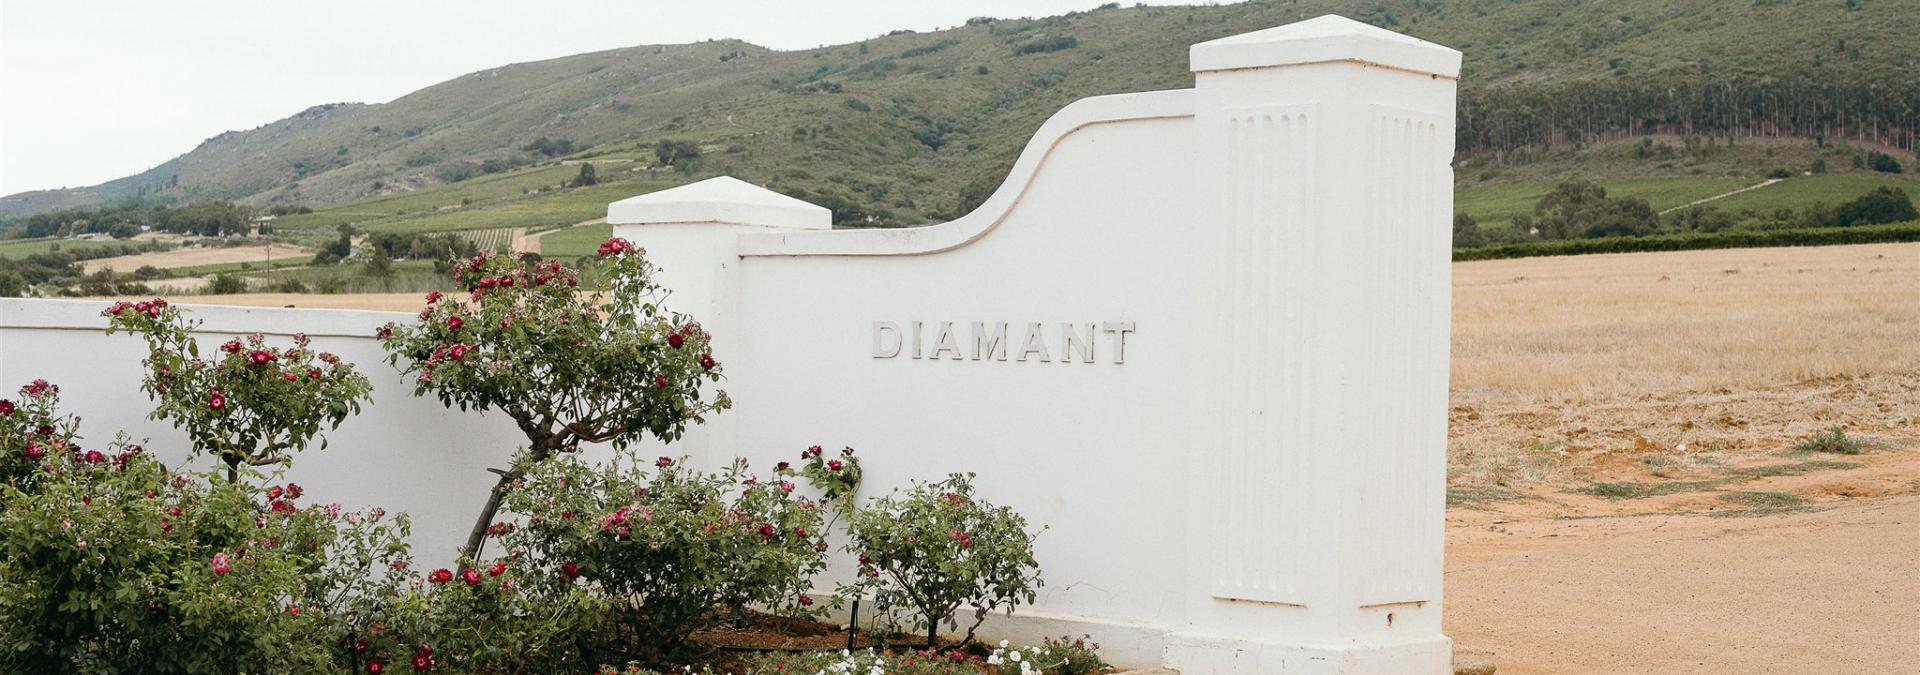 Contact Diamant Estate